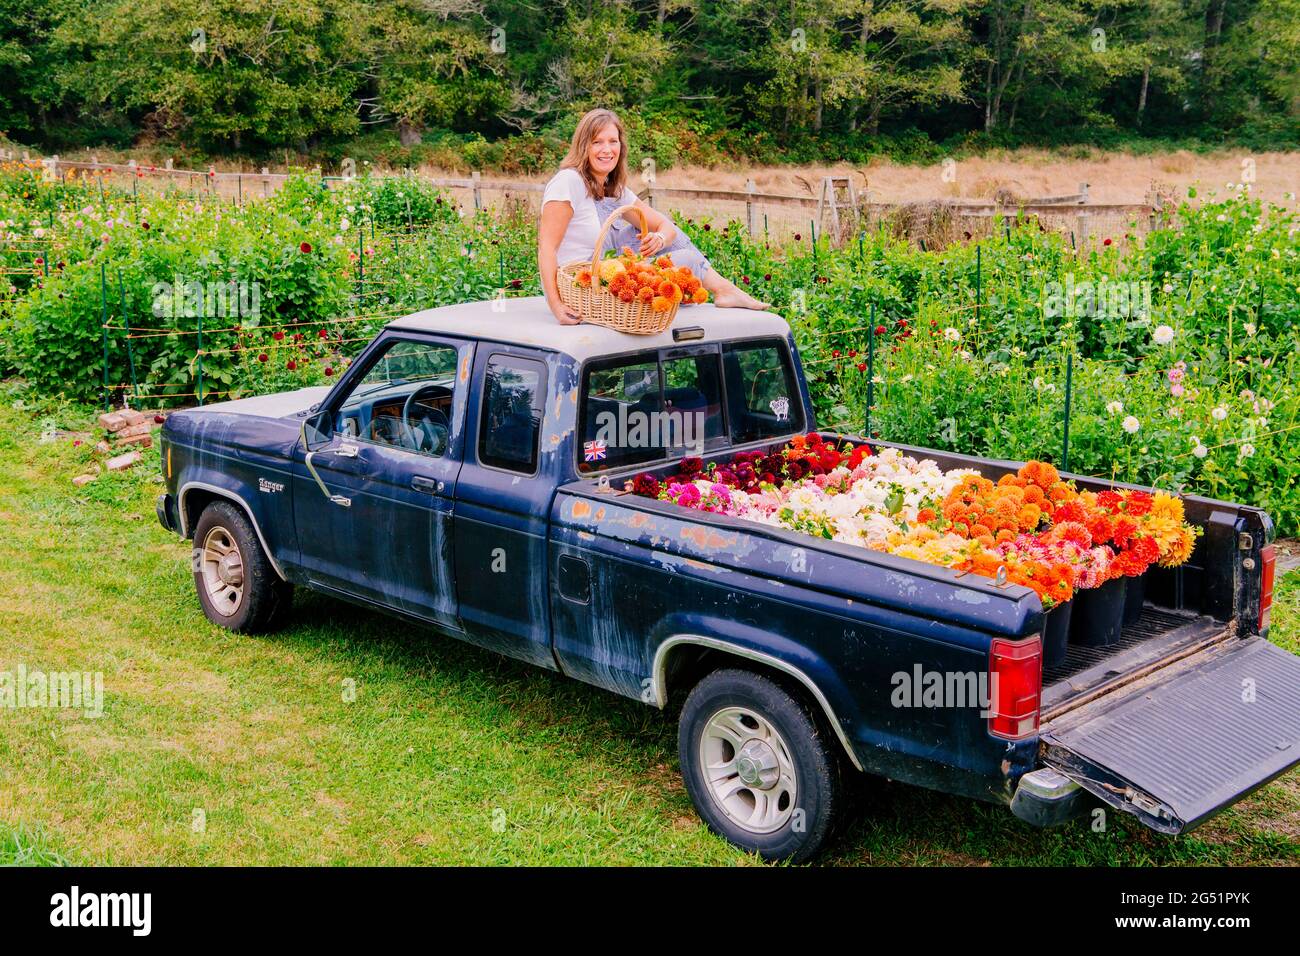 Lit camion plein de fleurs de Dahlia et femme avec panier assis sur le toit Banque D'Images